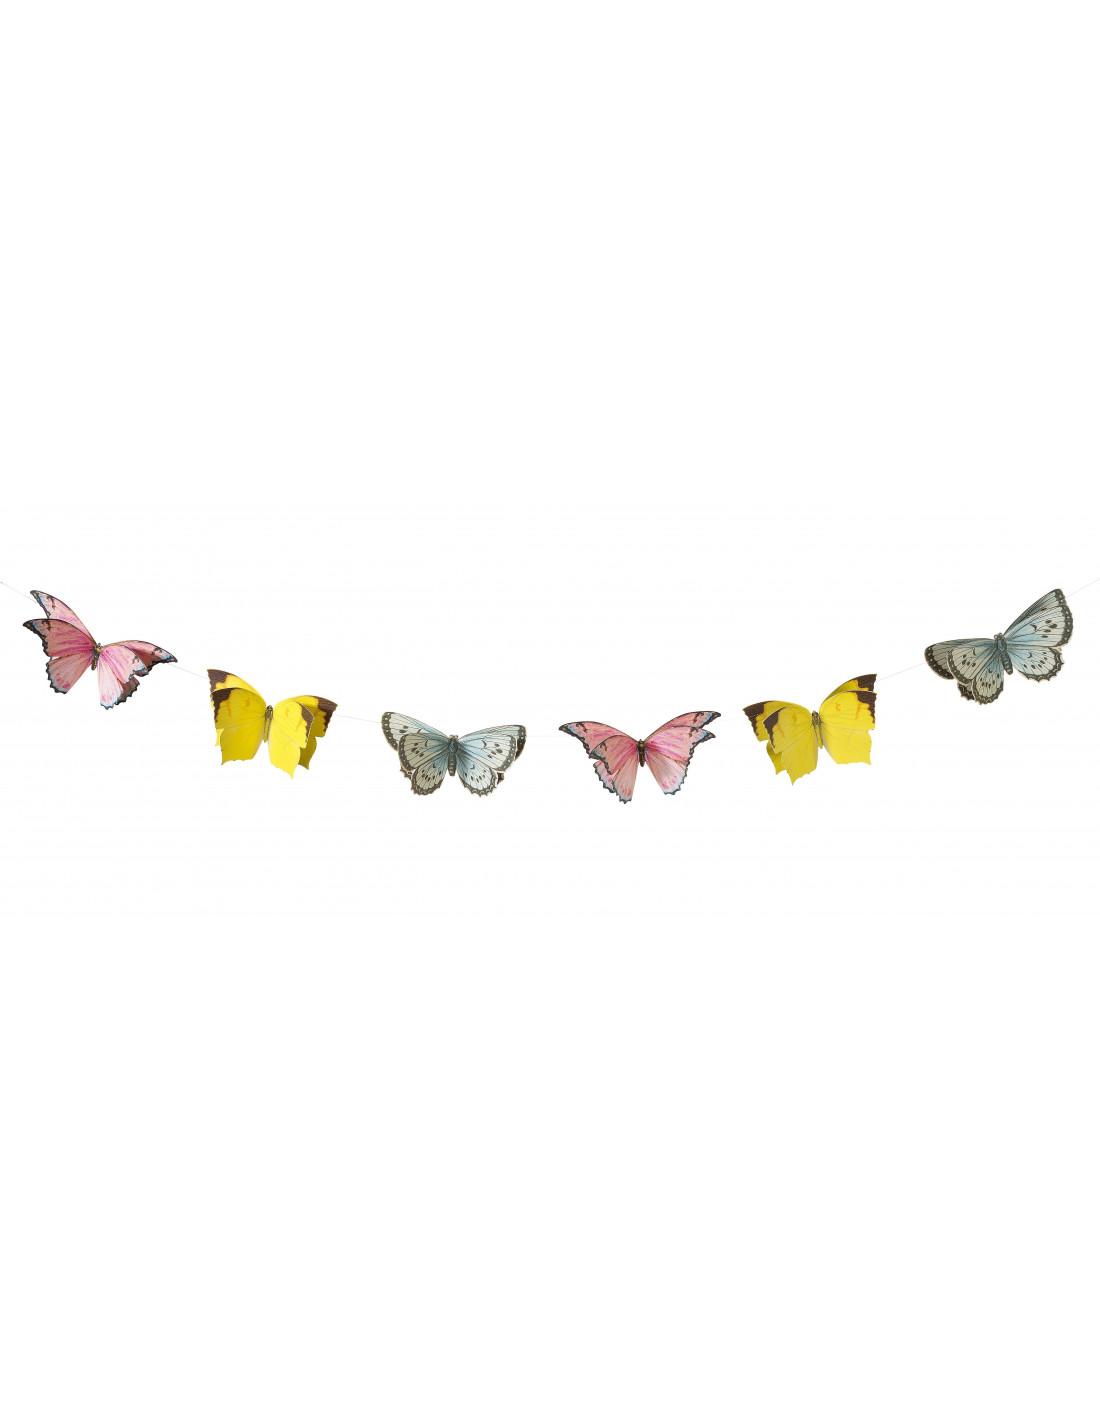 décoration papillons